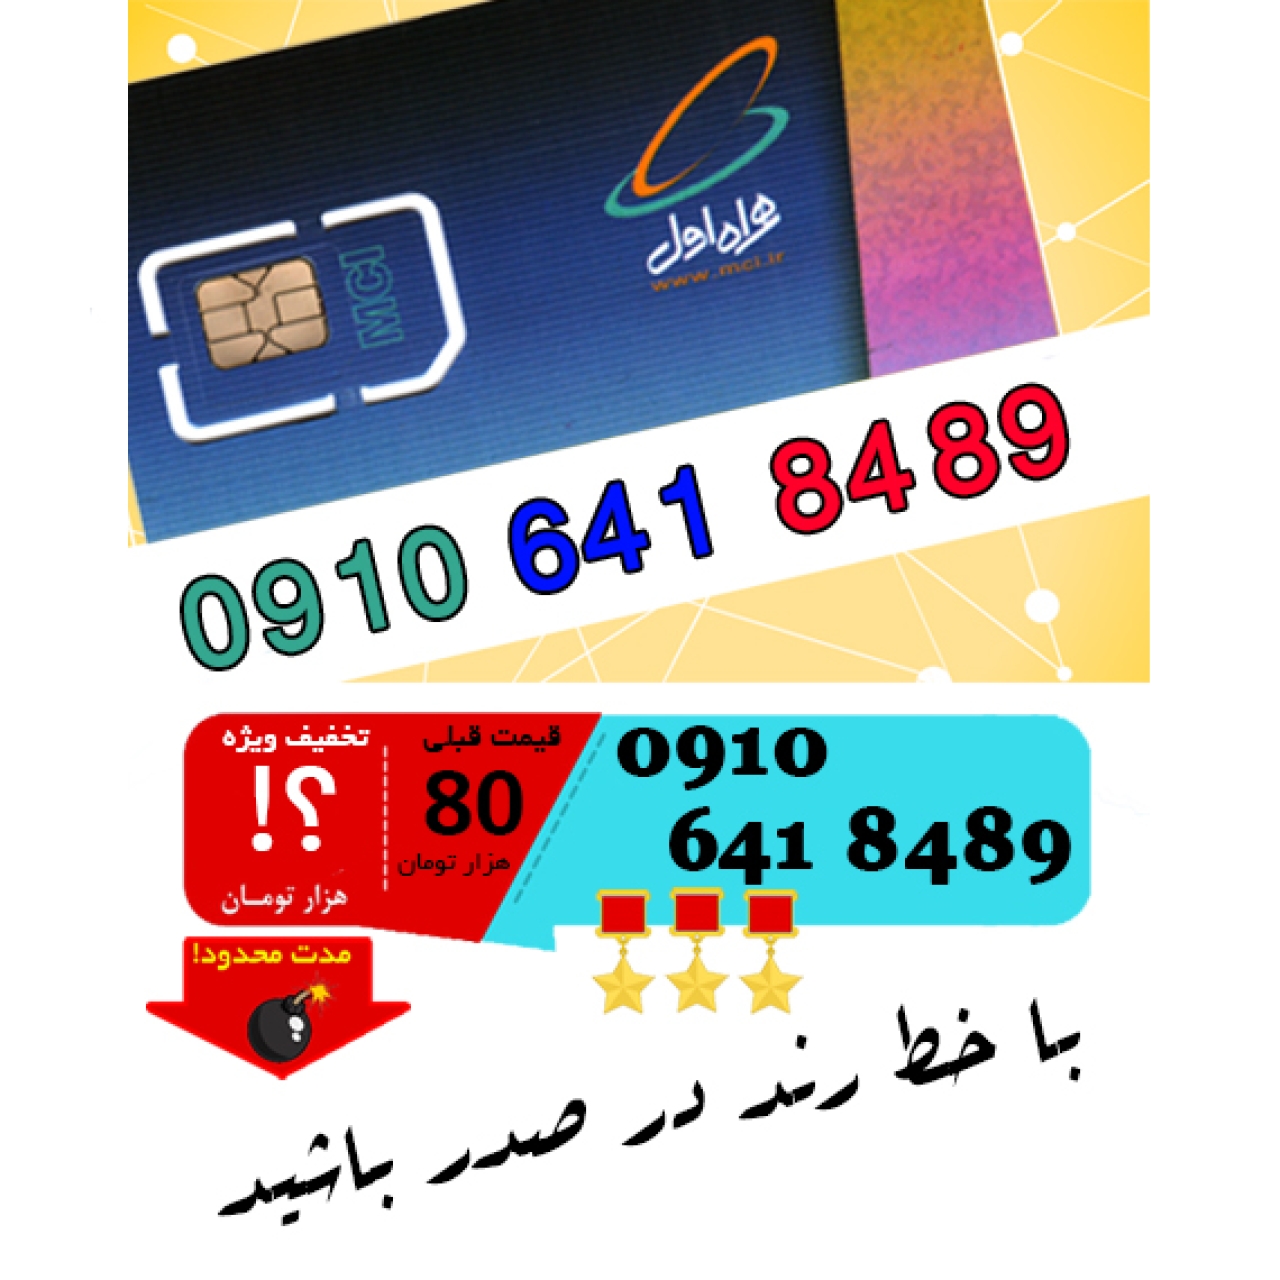 سیم کارت اعتباری رند همراه اول 09106418489